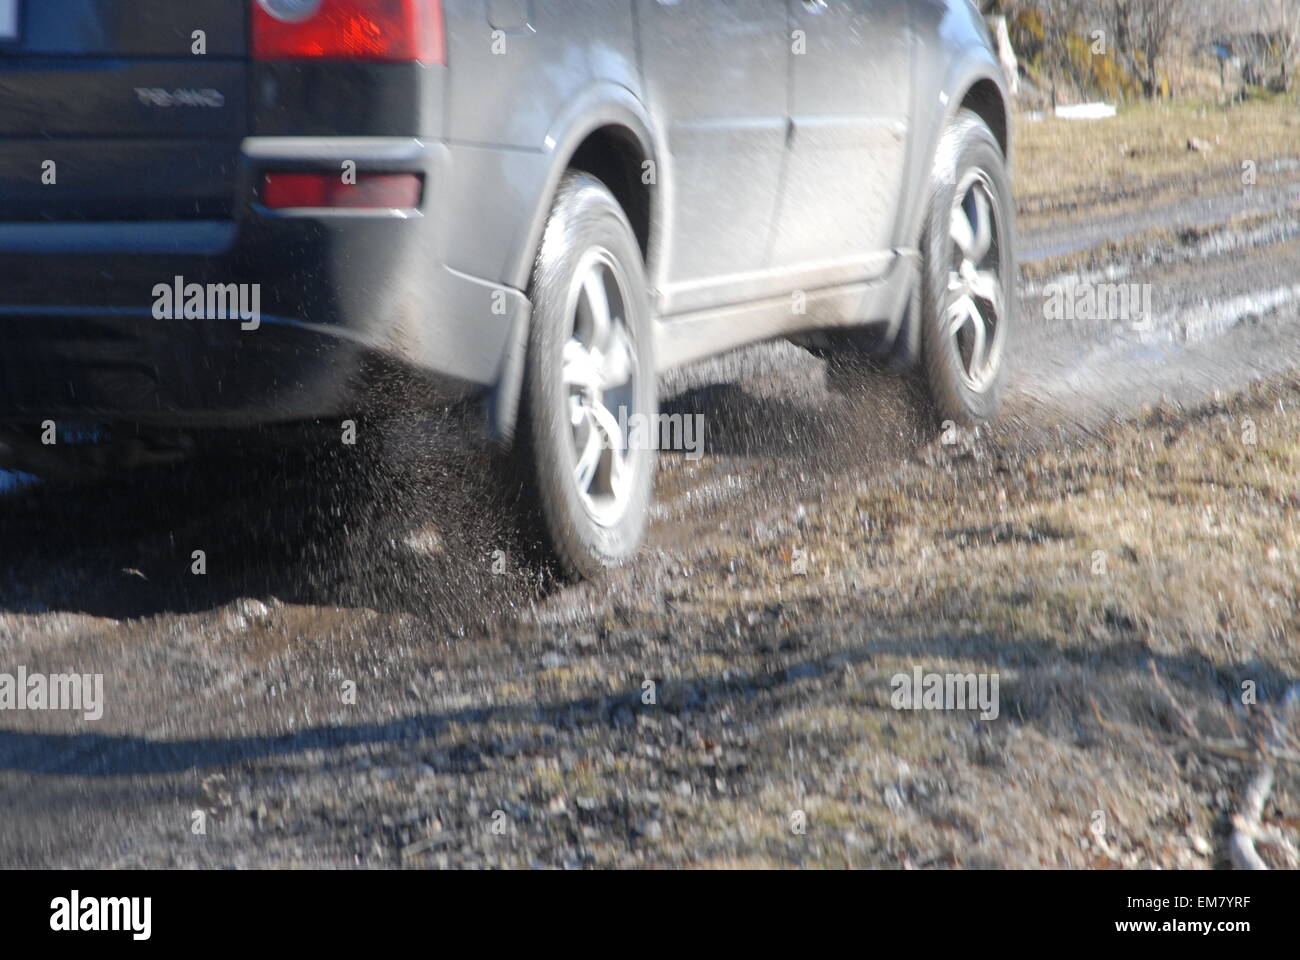 Le ruote delle auto spruzzano acqua guidando attraverso pozzanghere su strade fangose allagate. Foto Stock